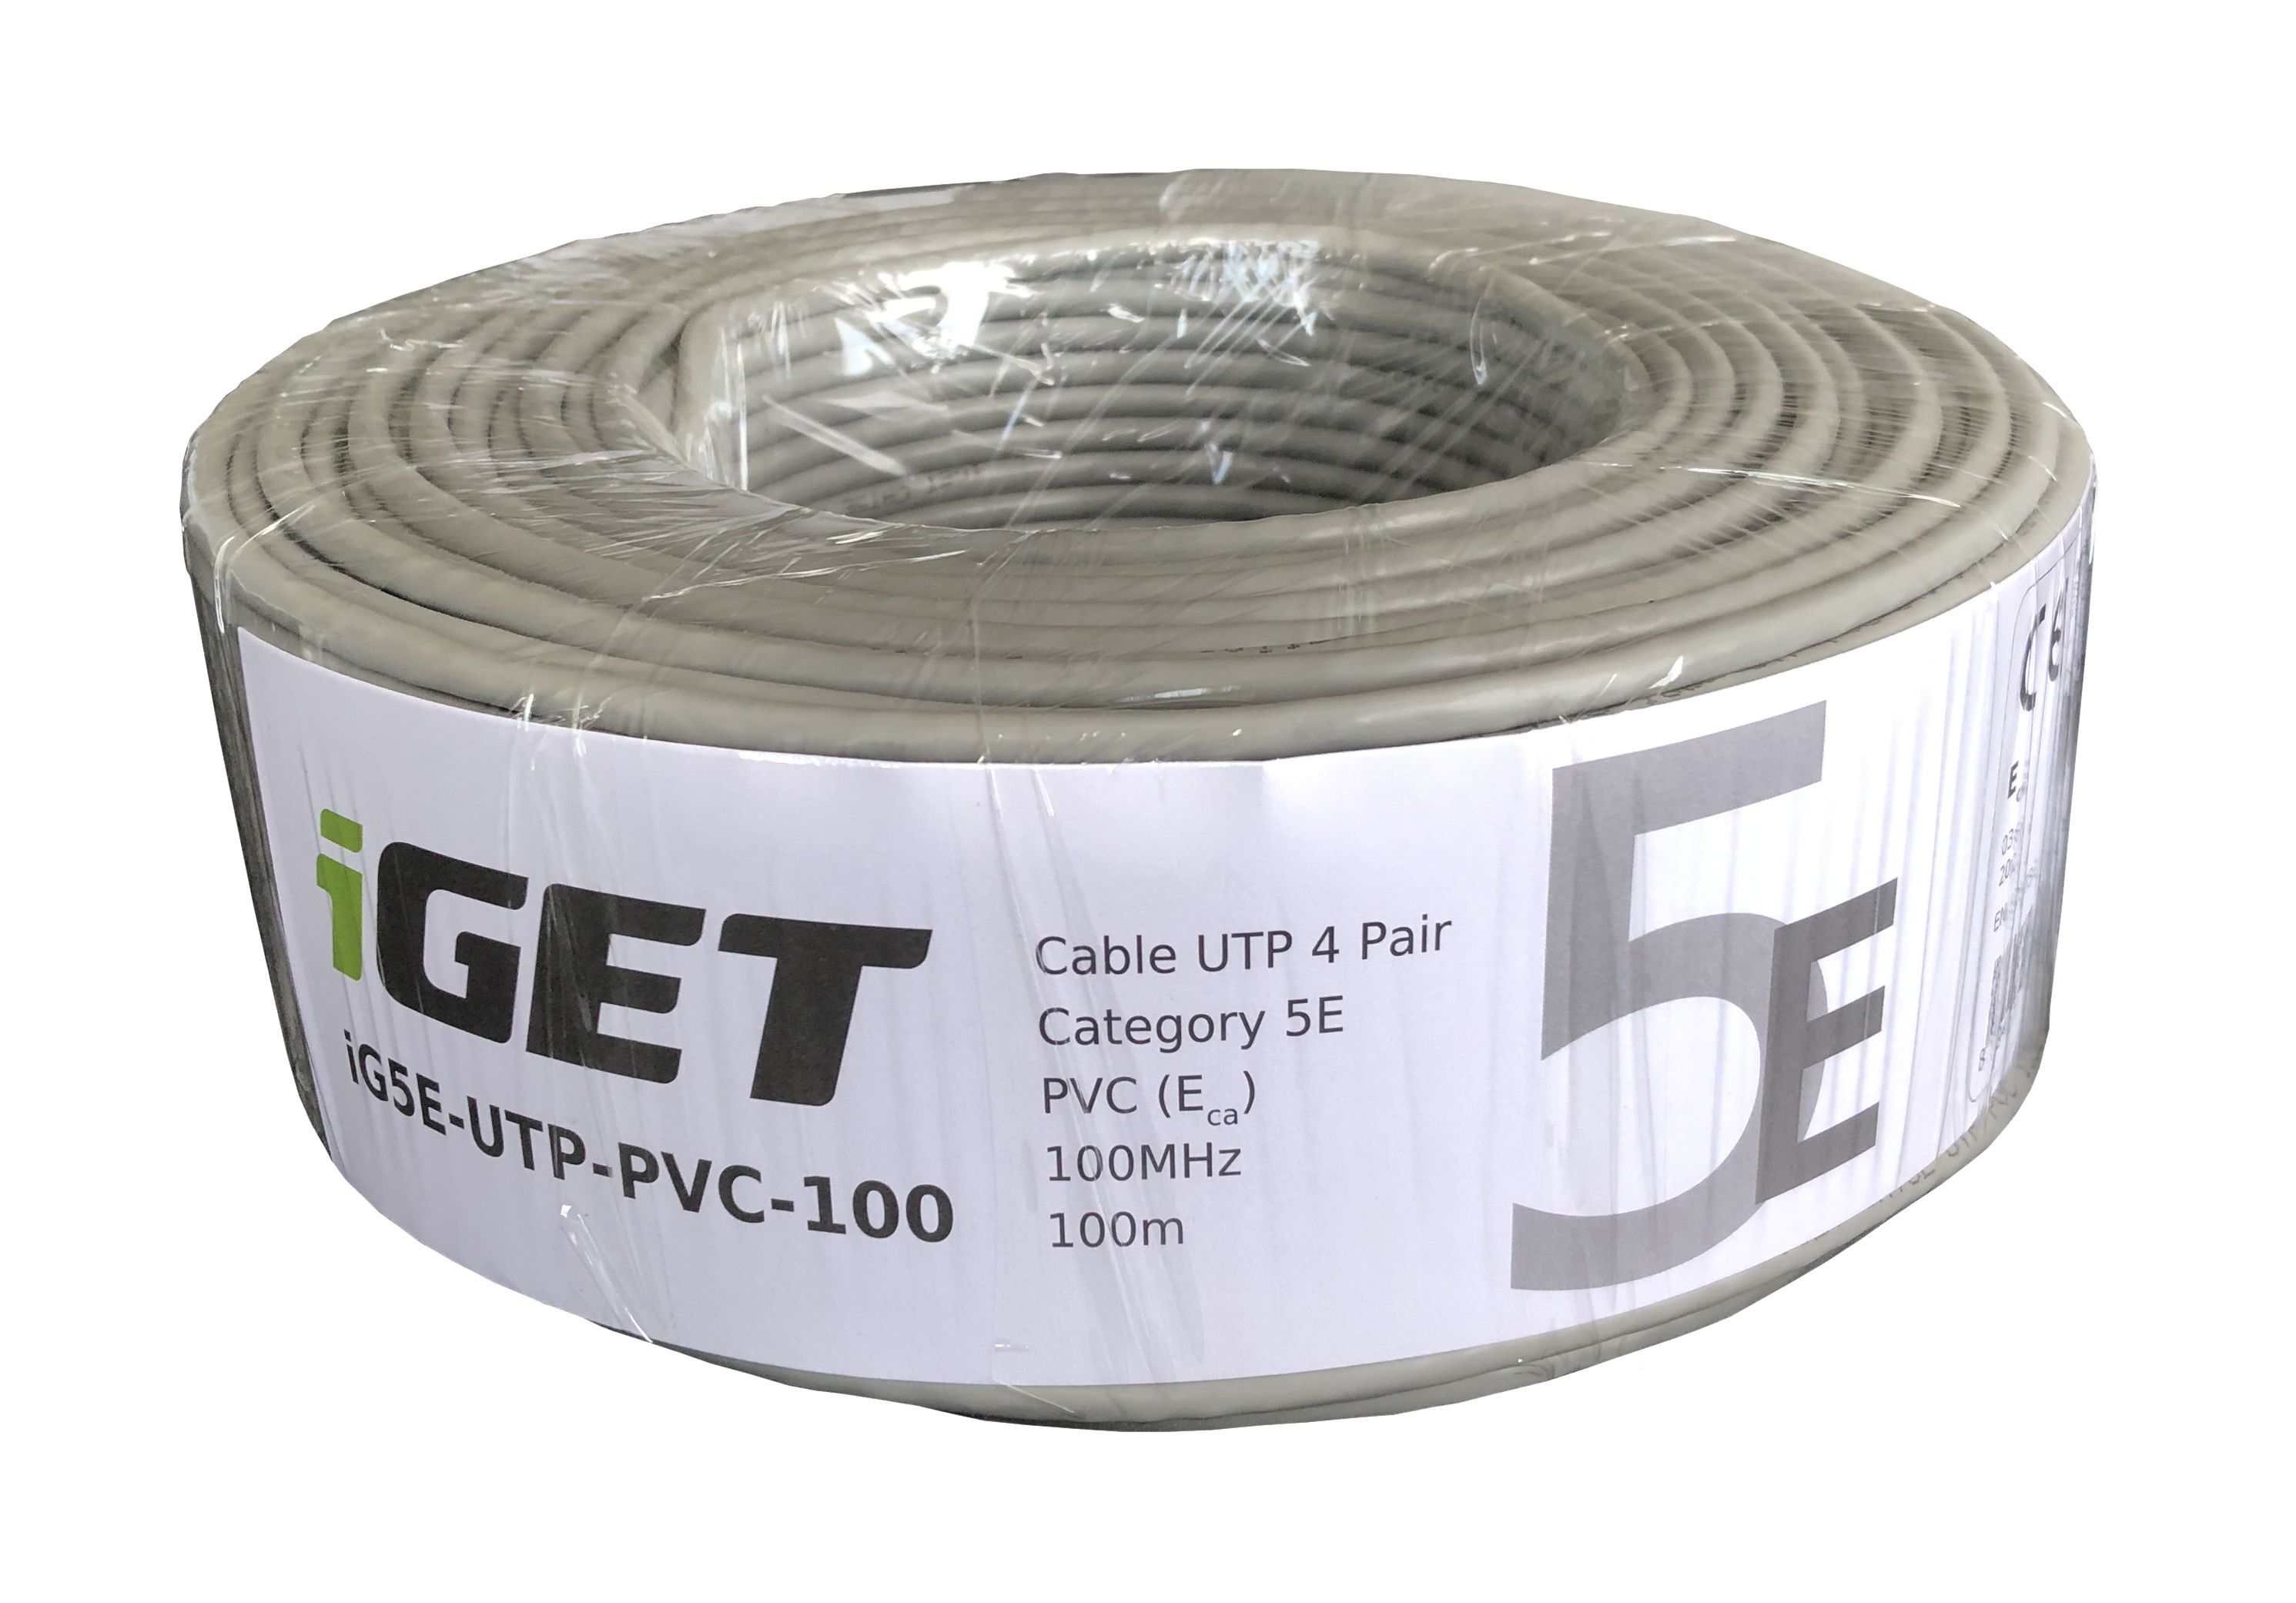 iGET CABLE CAT5E UTP PVC 100m role